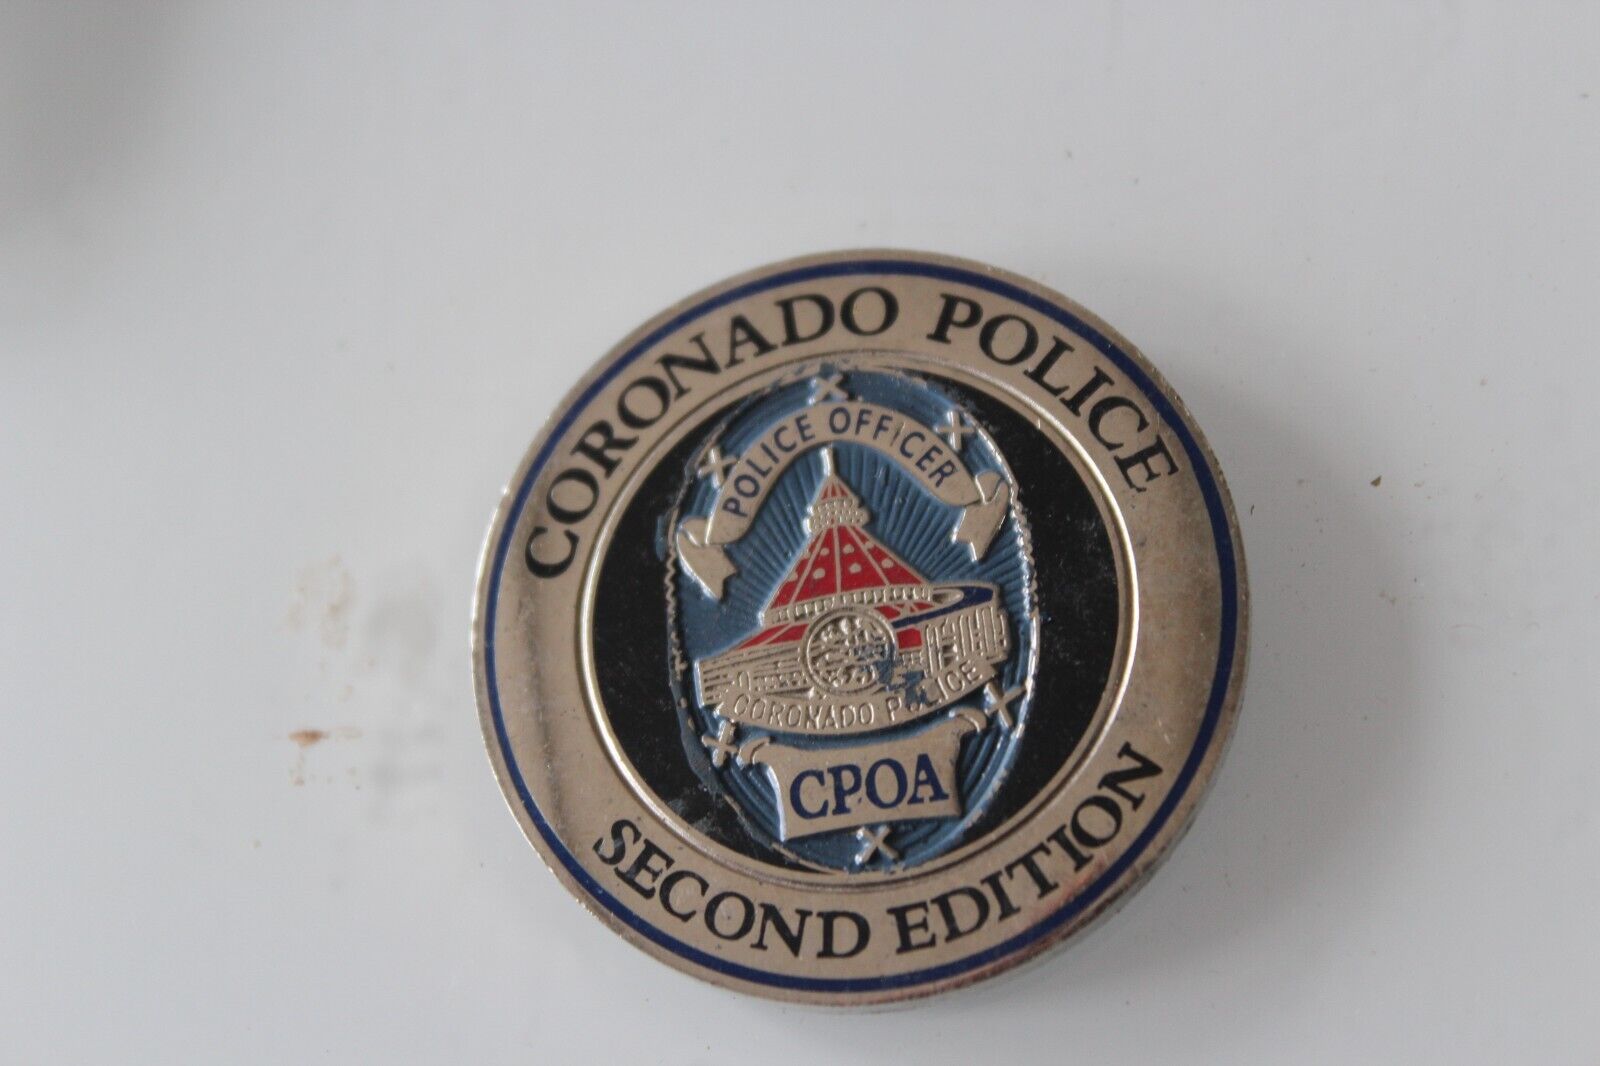 Coronado Police Second Edition CPOA Challenge Coin